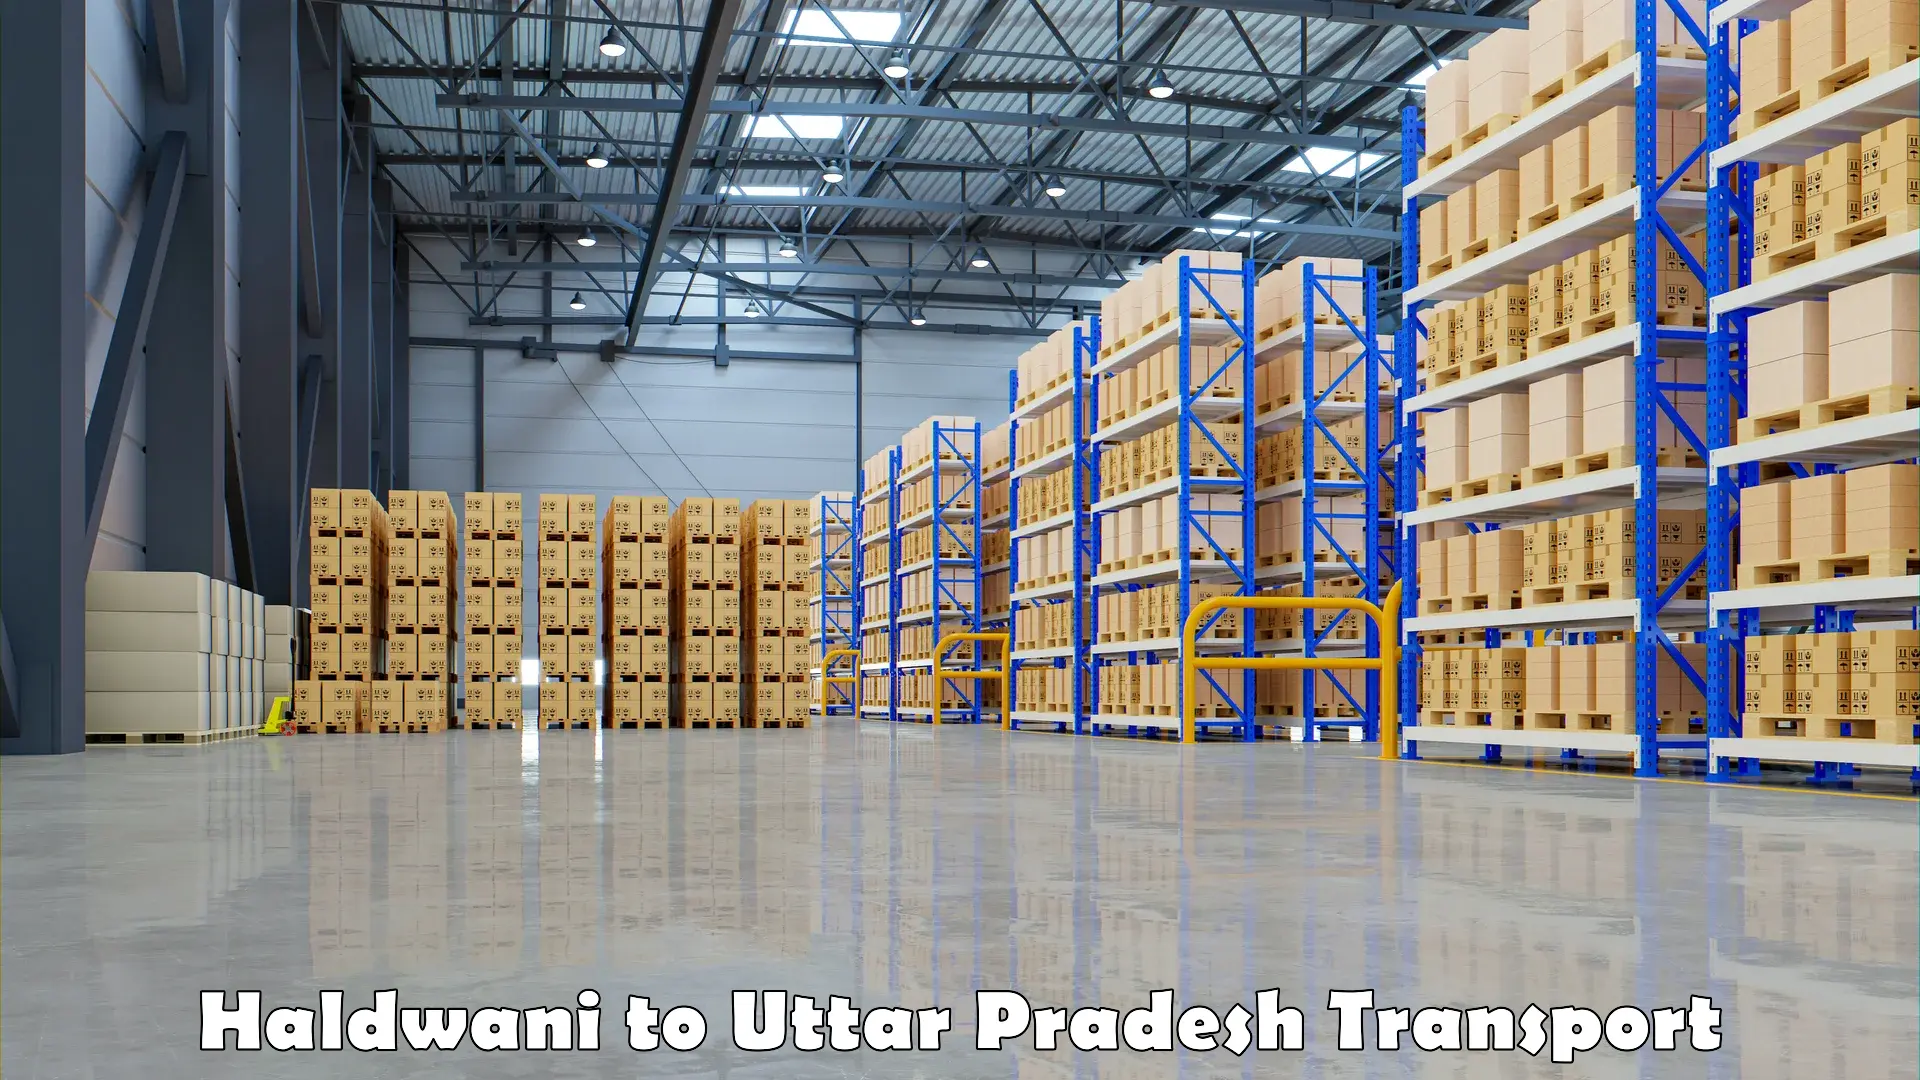 Shipping partner Haldwani to Uttar Pradesh